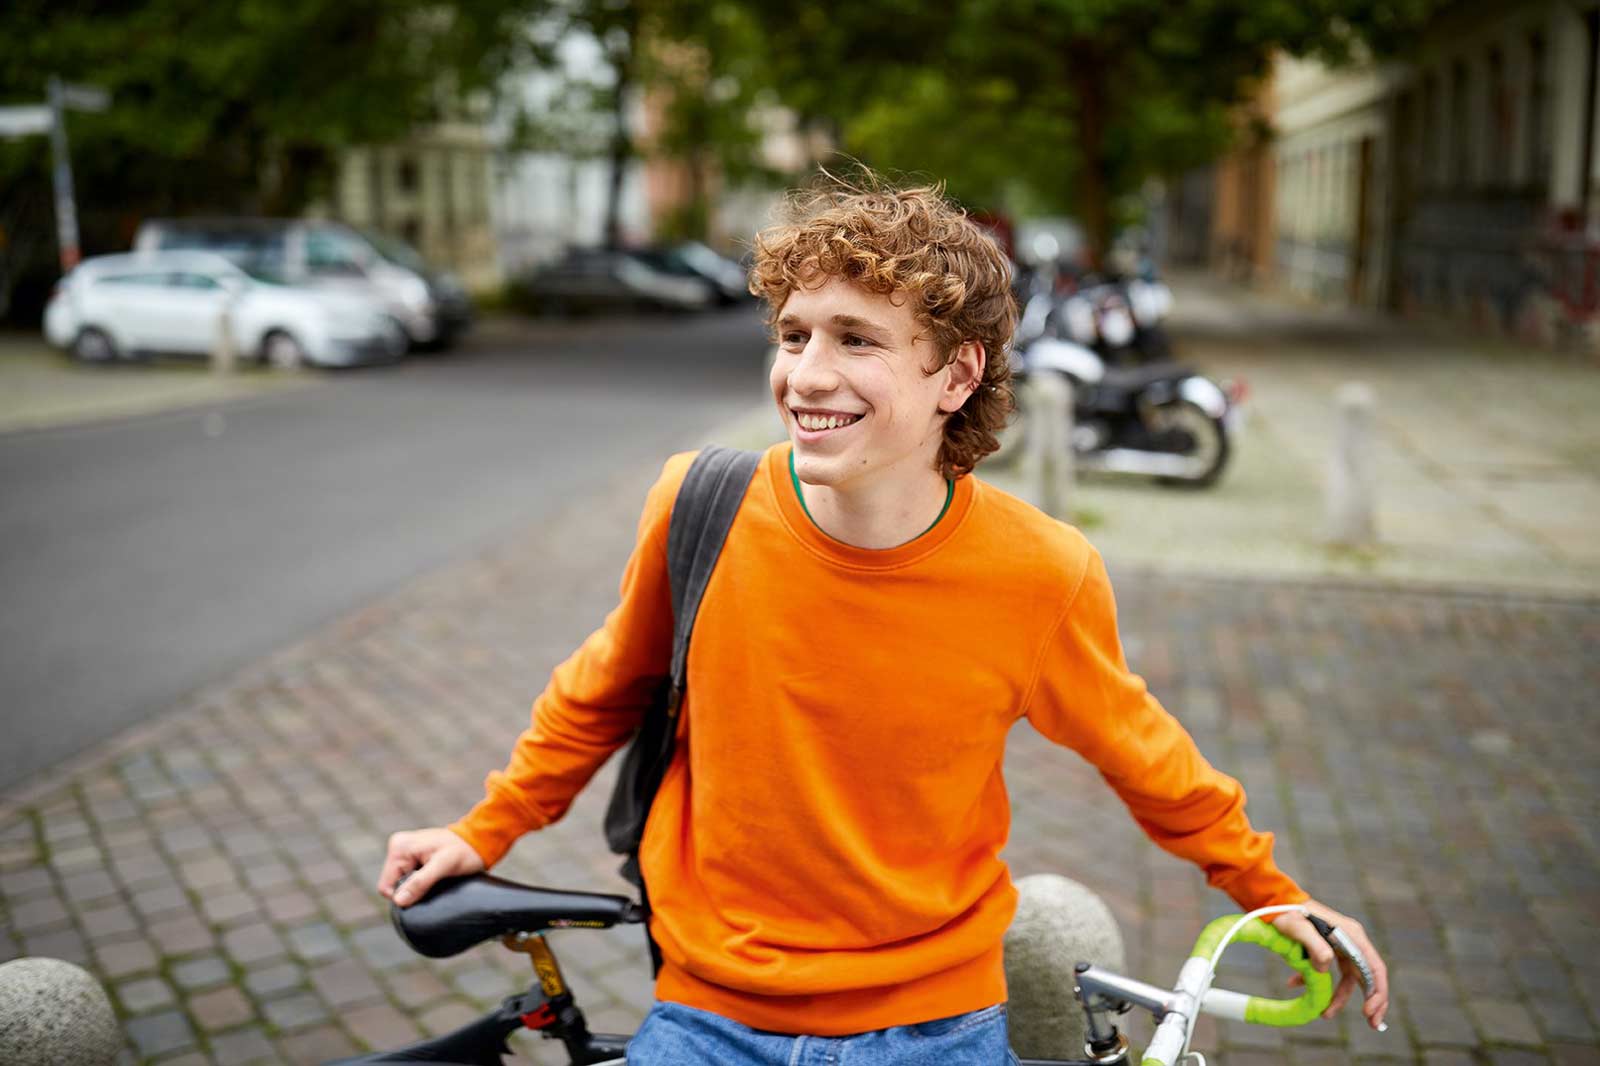 Ein jugendlicher Mann steht mit seinem Fahrrad auf einer Straße und lächelt